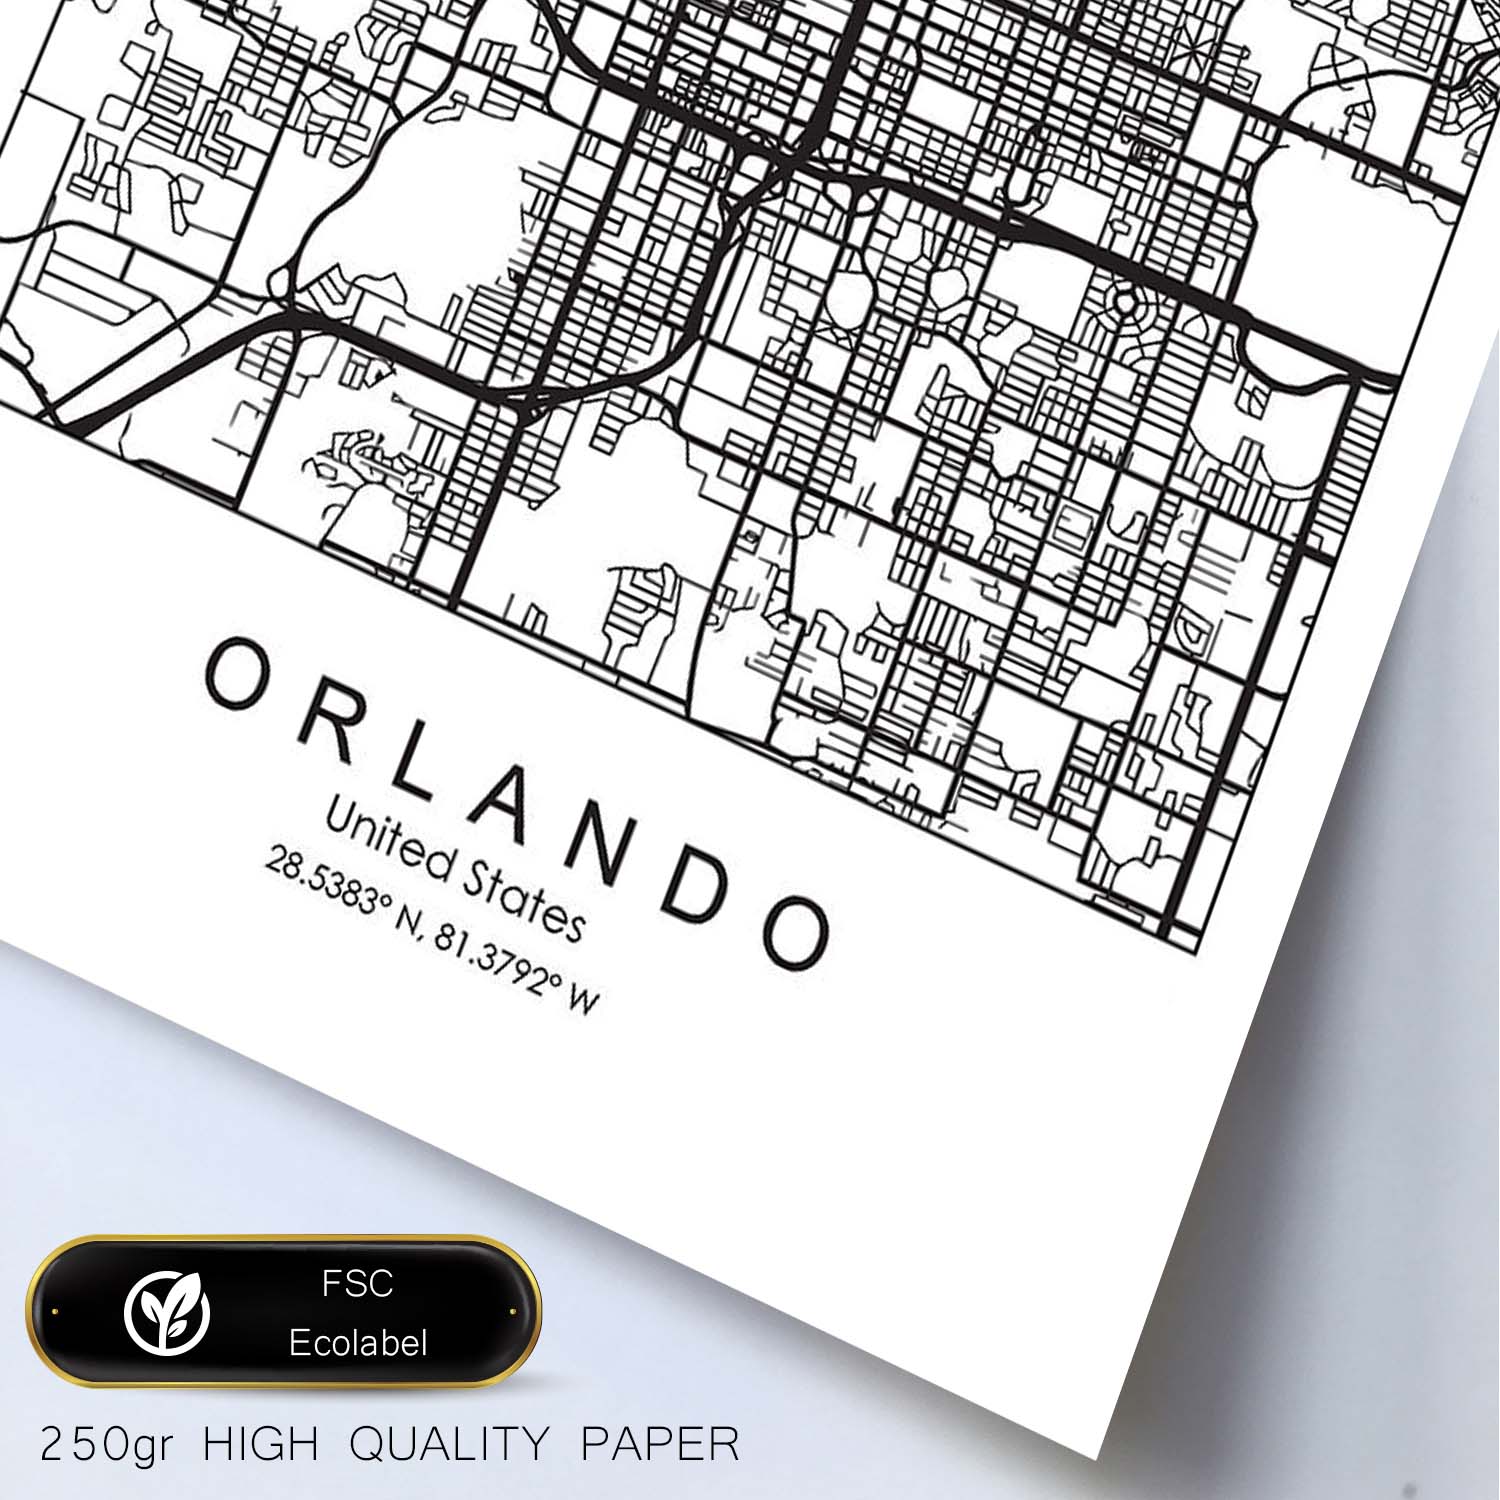 Poster con mapa de Orlando. Lámina de Estados Unidos, con imágenes de mapas y carreteras-Artwork-Nacnic-Nacnic Estudio SL